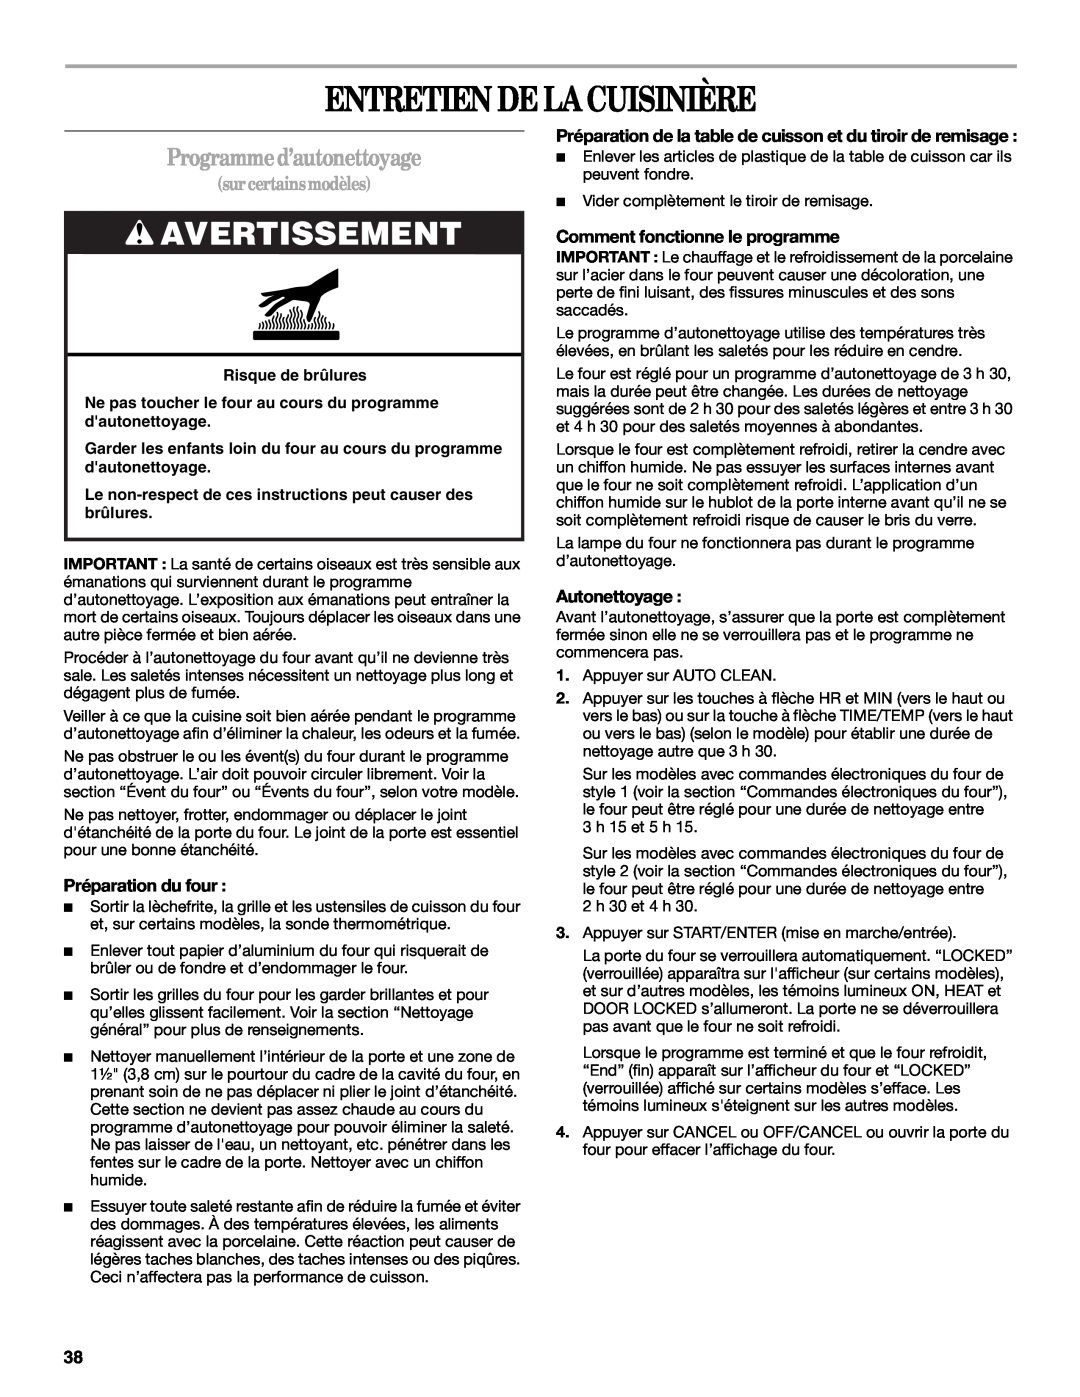 Whirlpool 9761040 manual Entretien De La Cuisinière, Programme d’autonettoyage, Avertissement, sur certains modèles 